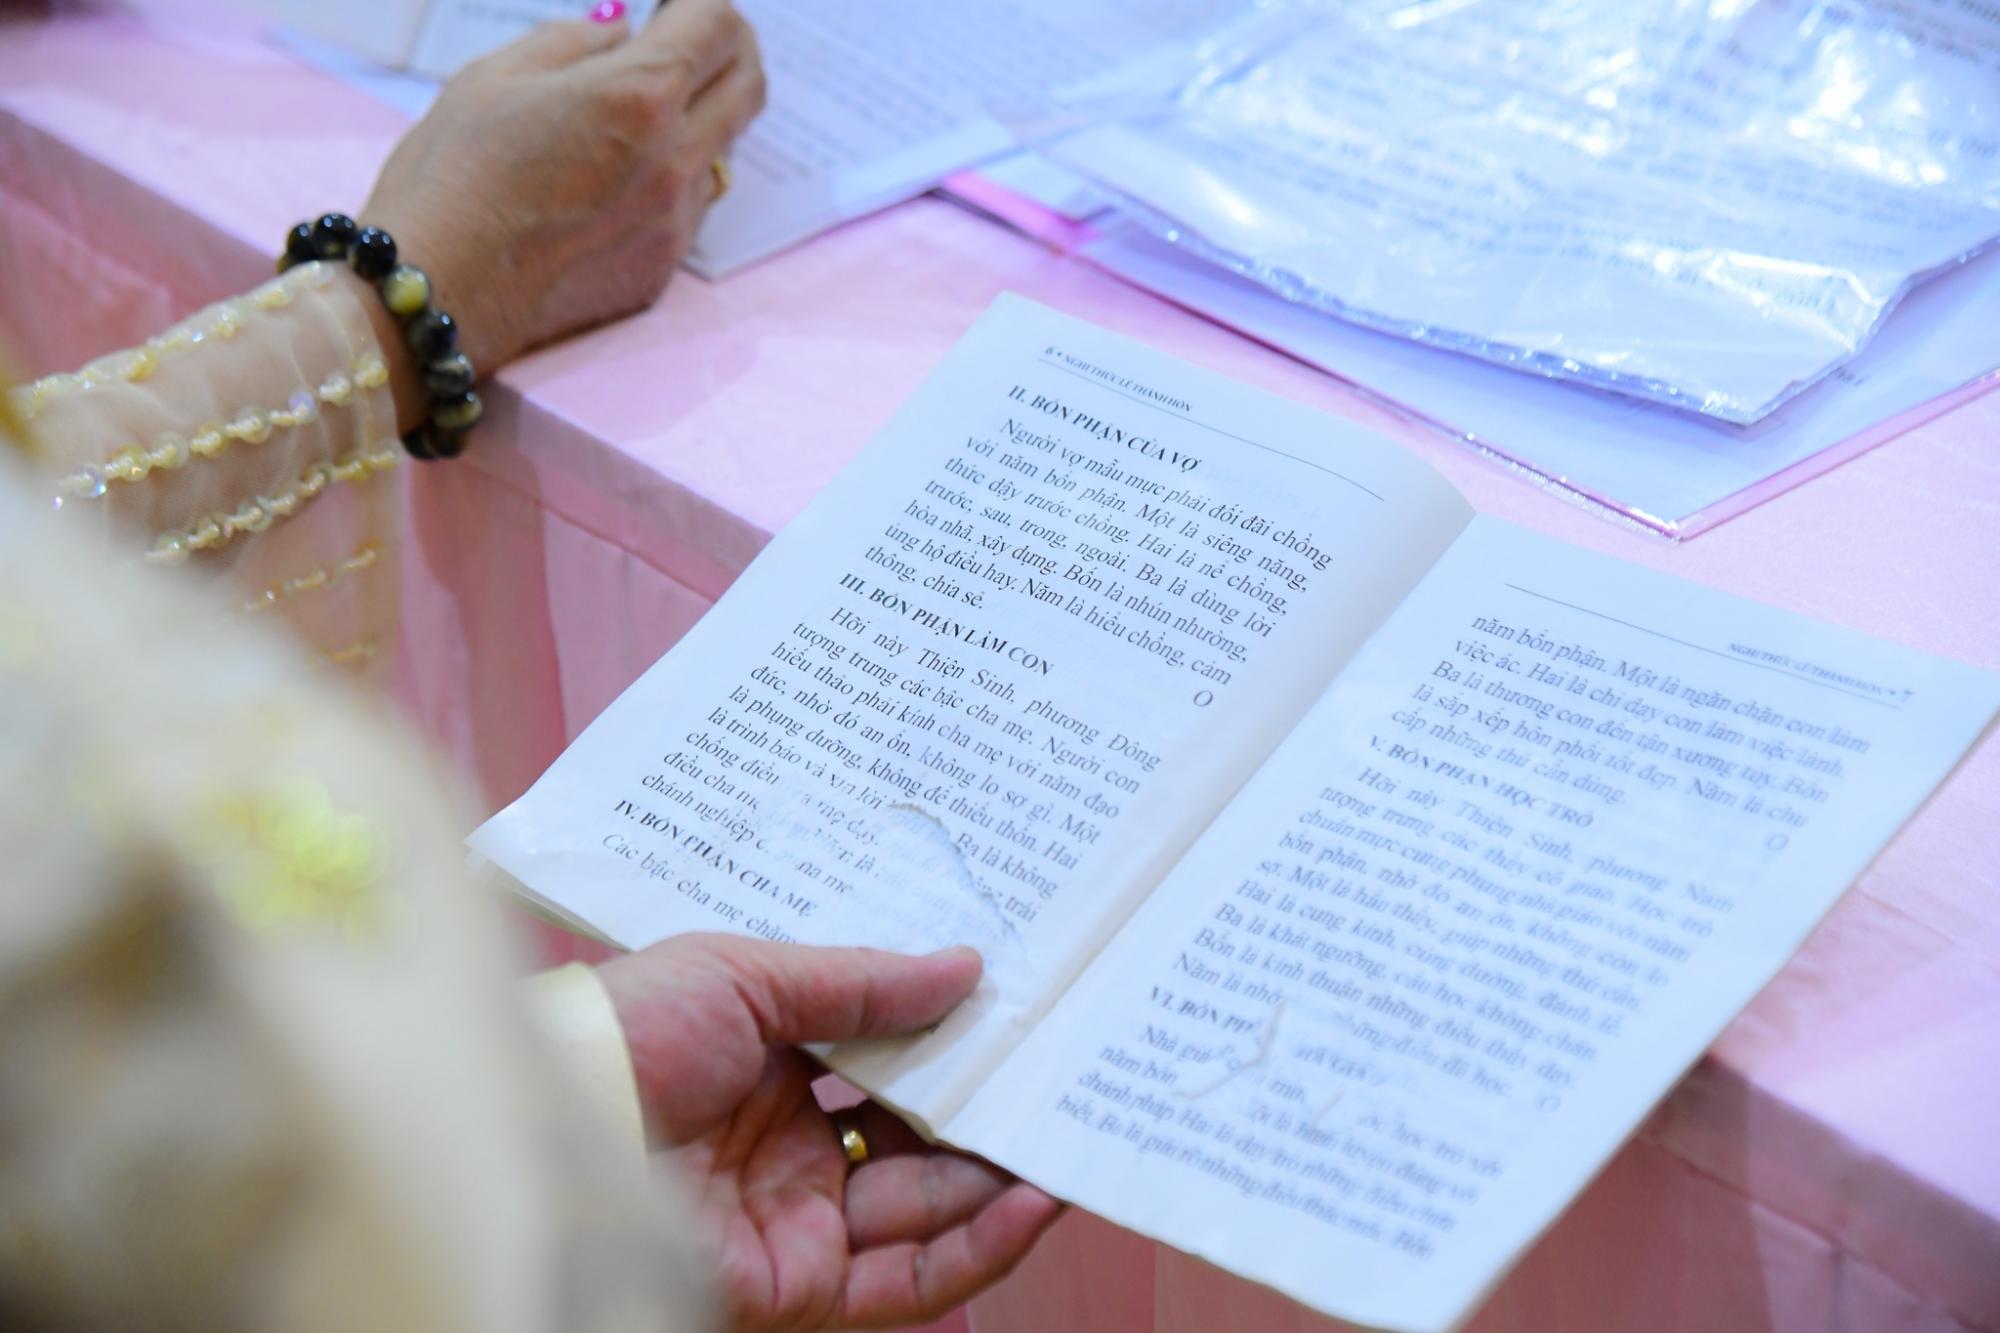 Lễ Hằng thuận tại chùa giác Ngô: Niềm vui lứa đôi trong ngày đầu xuân mới